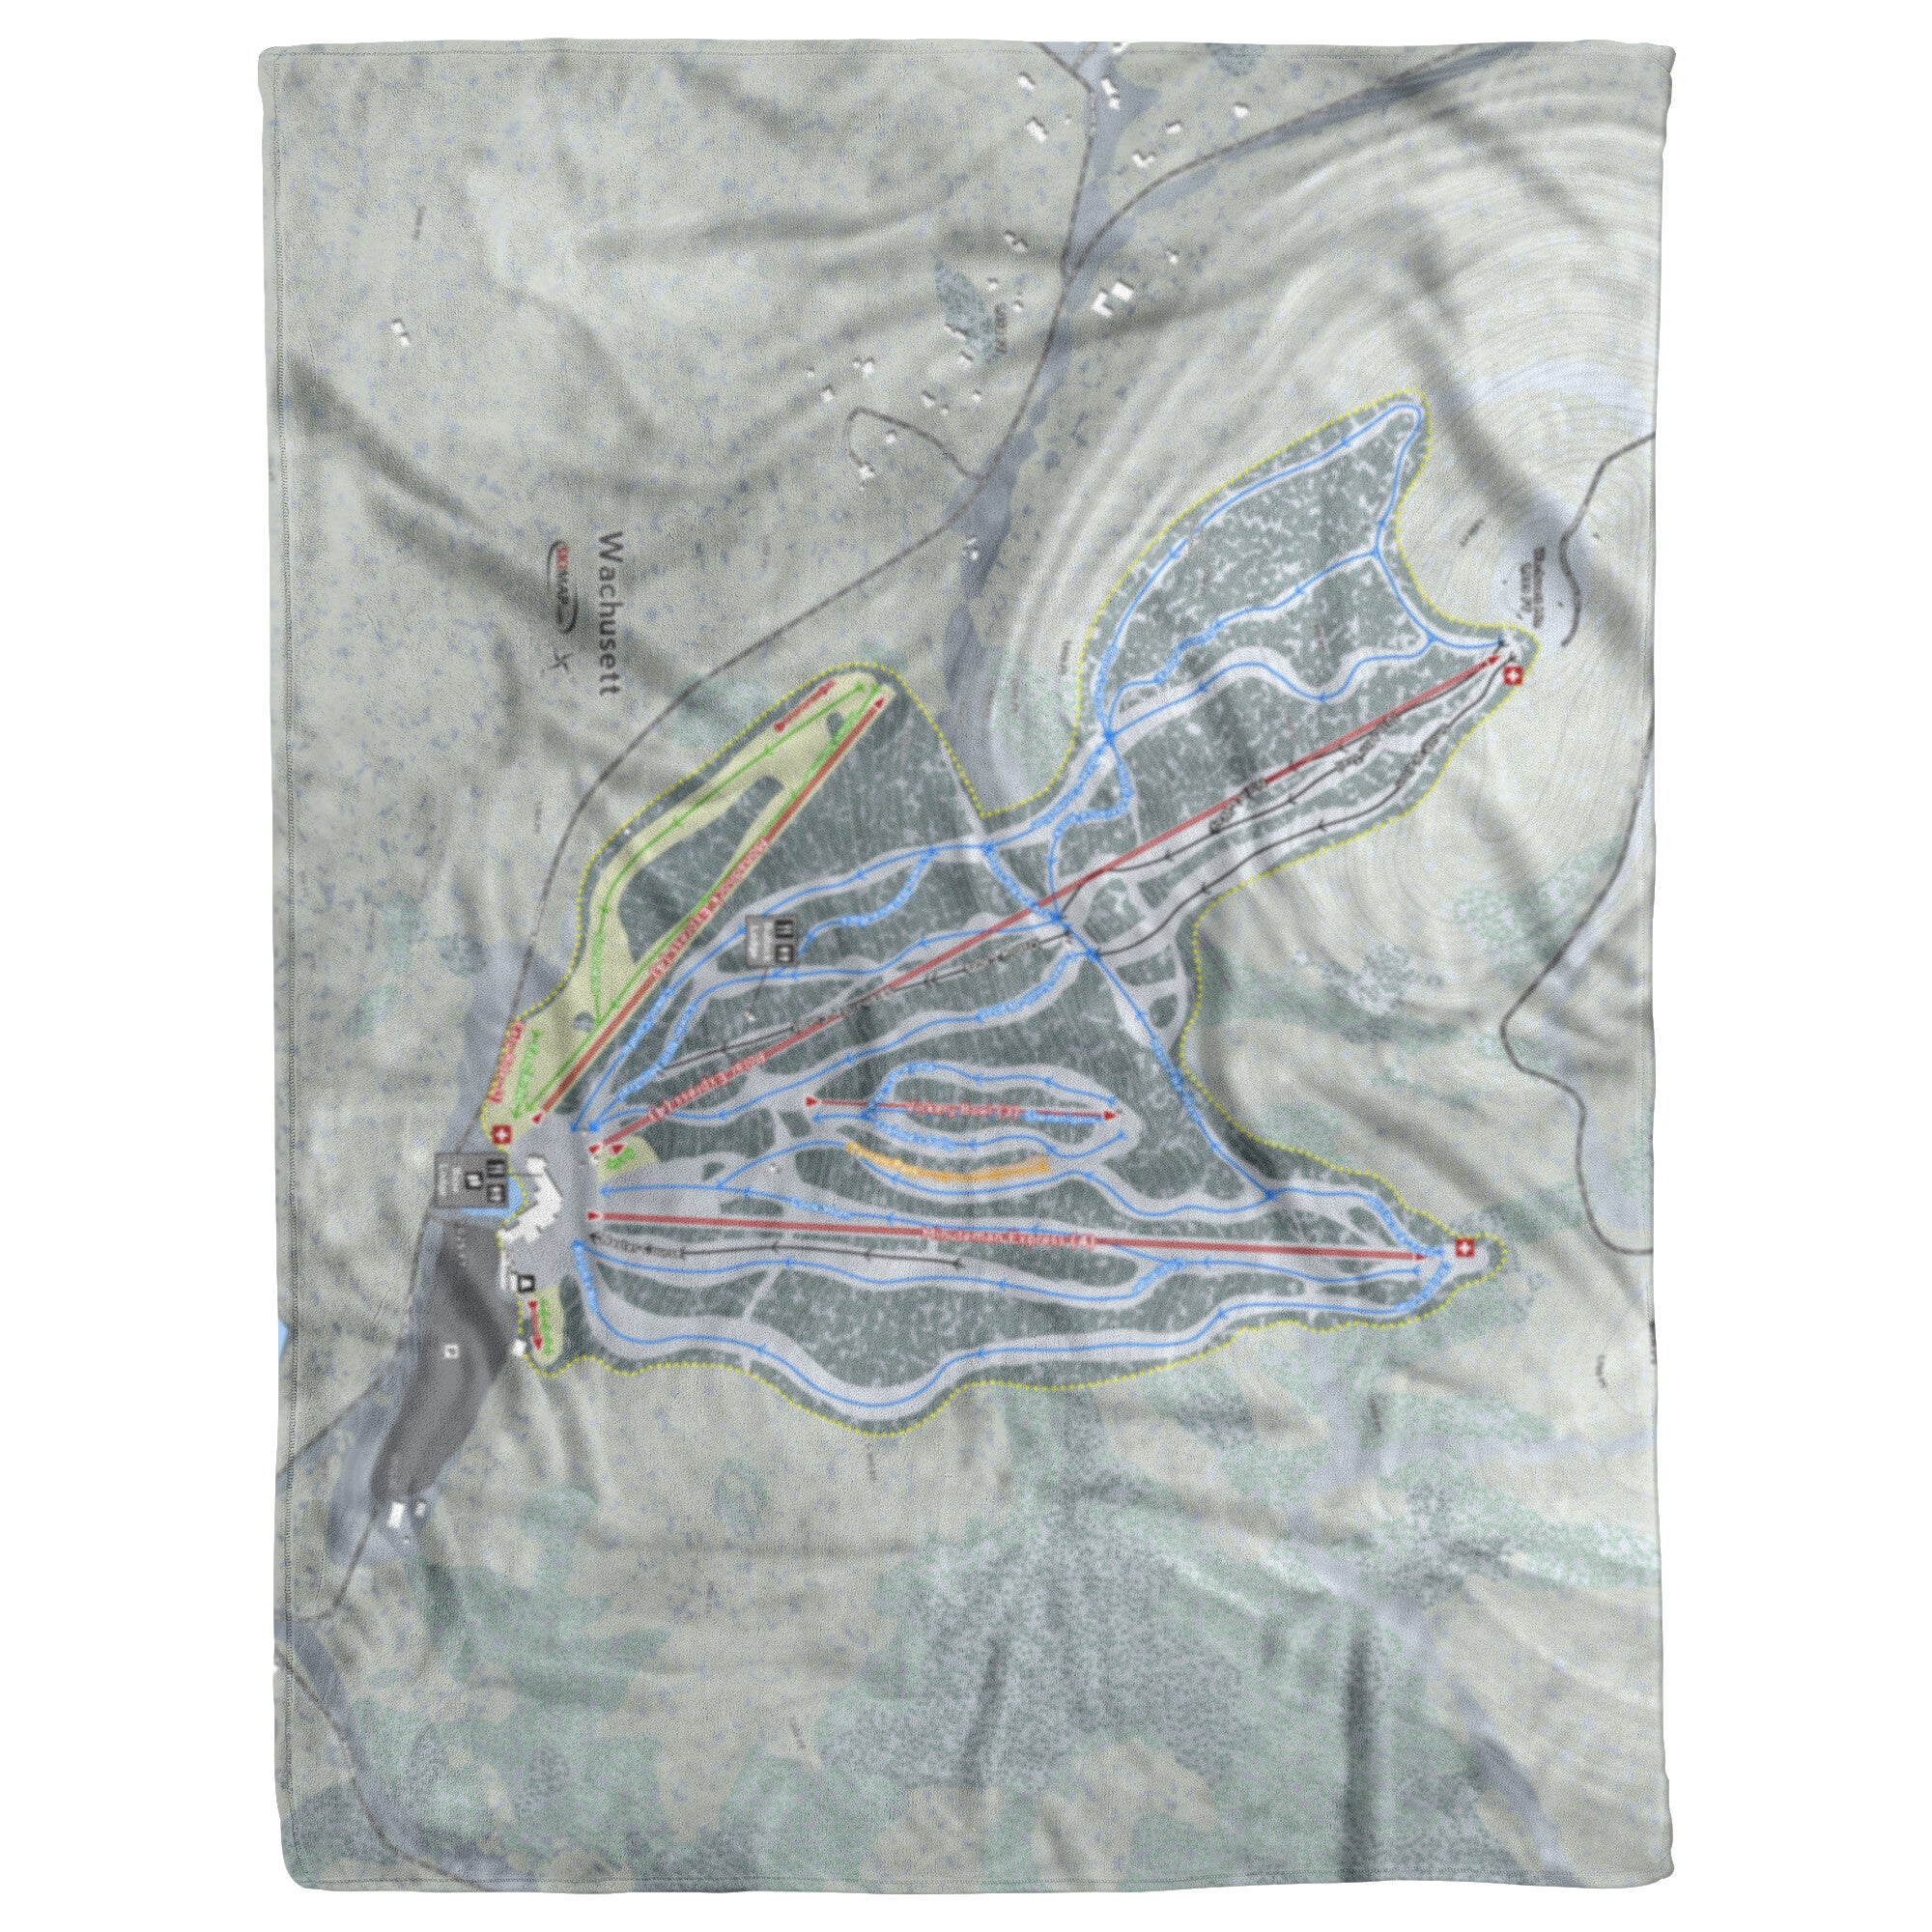 Wachusett, Massachusetts Ski Trail Map Blanket